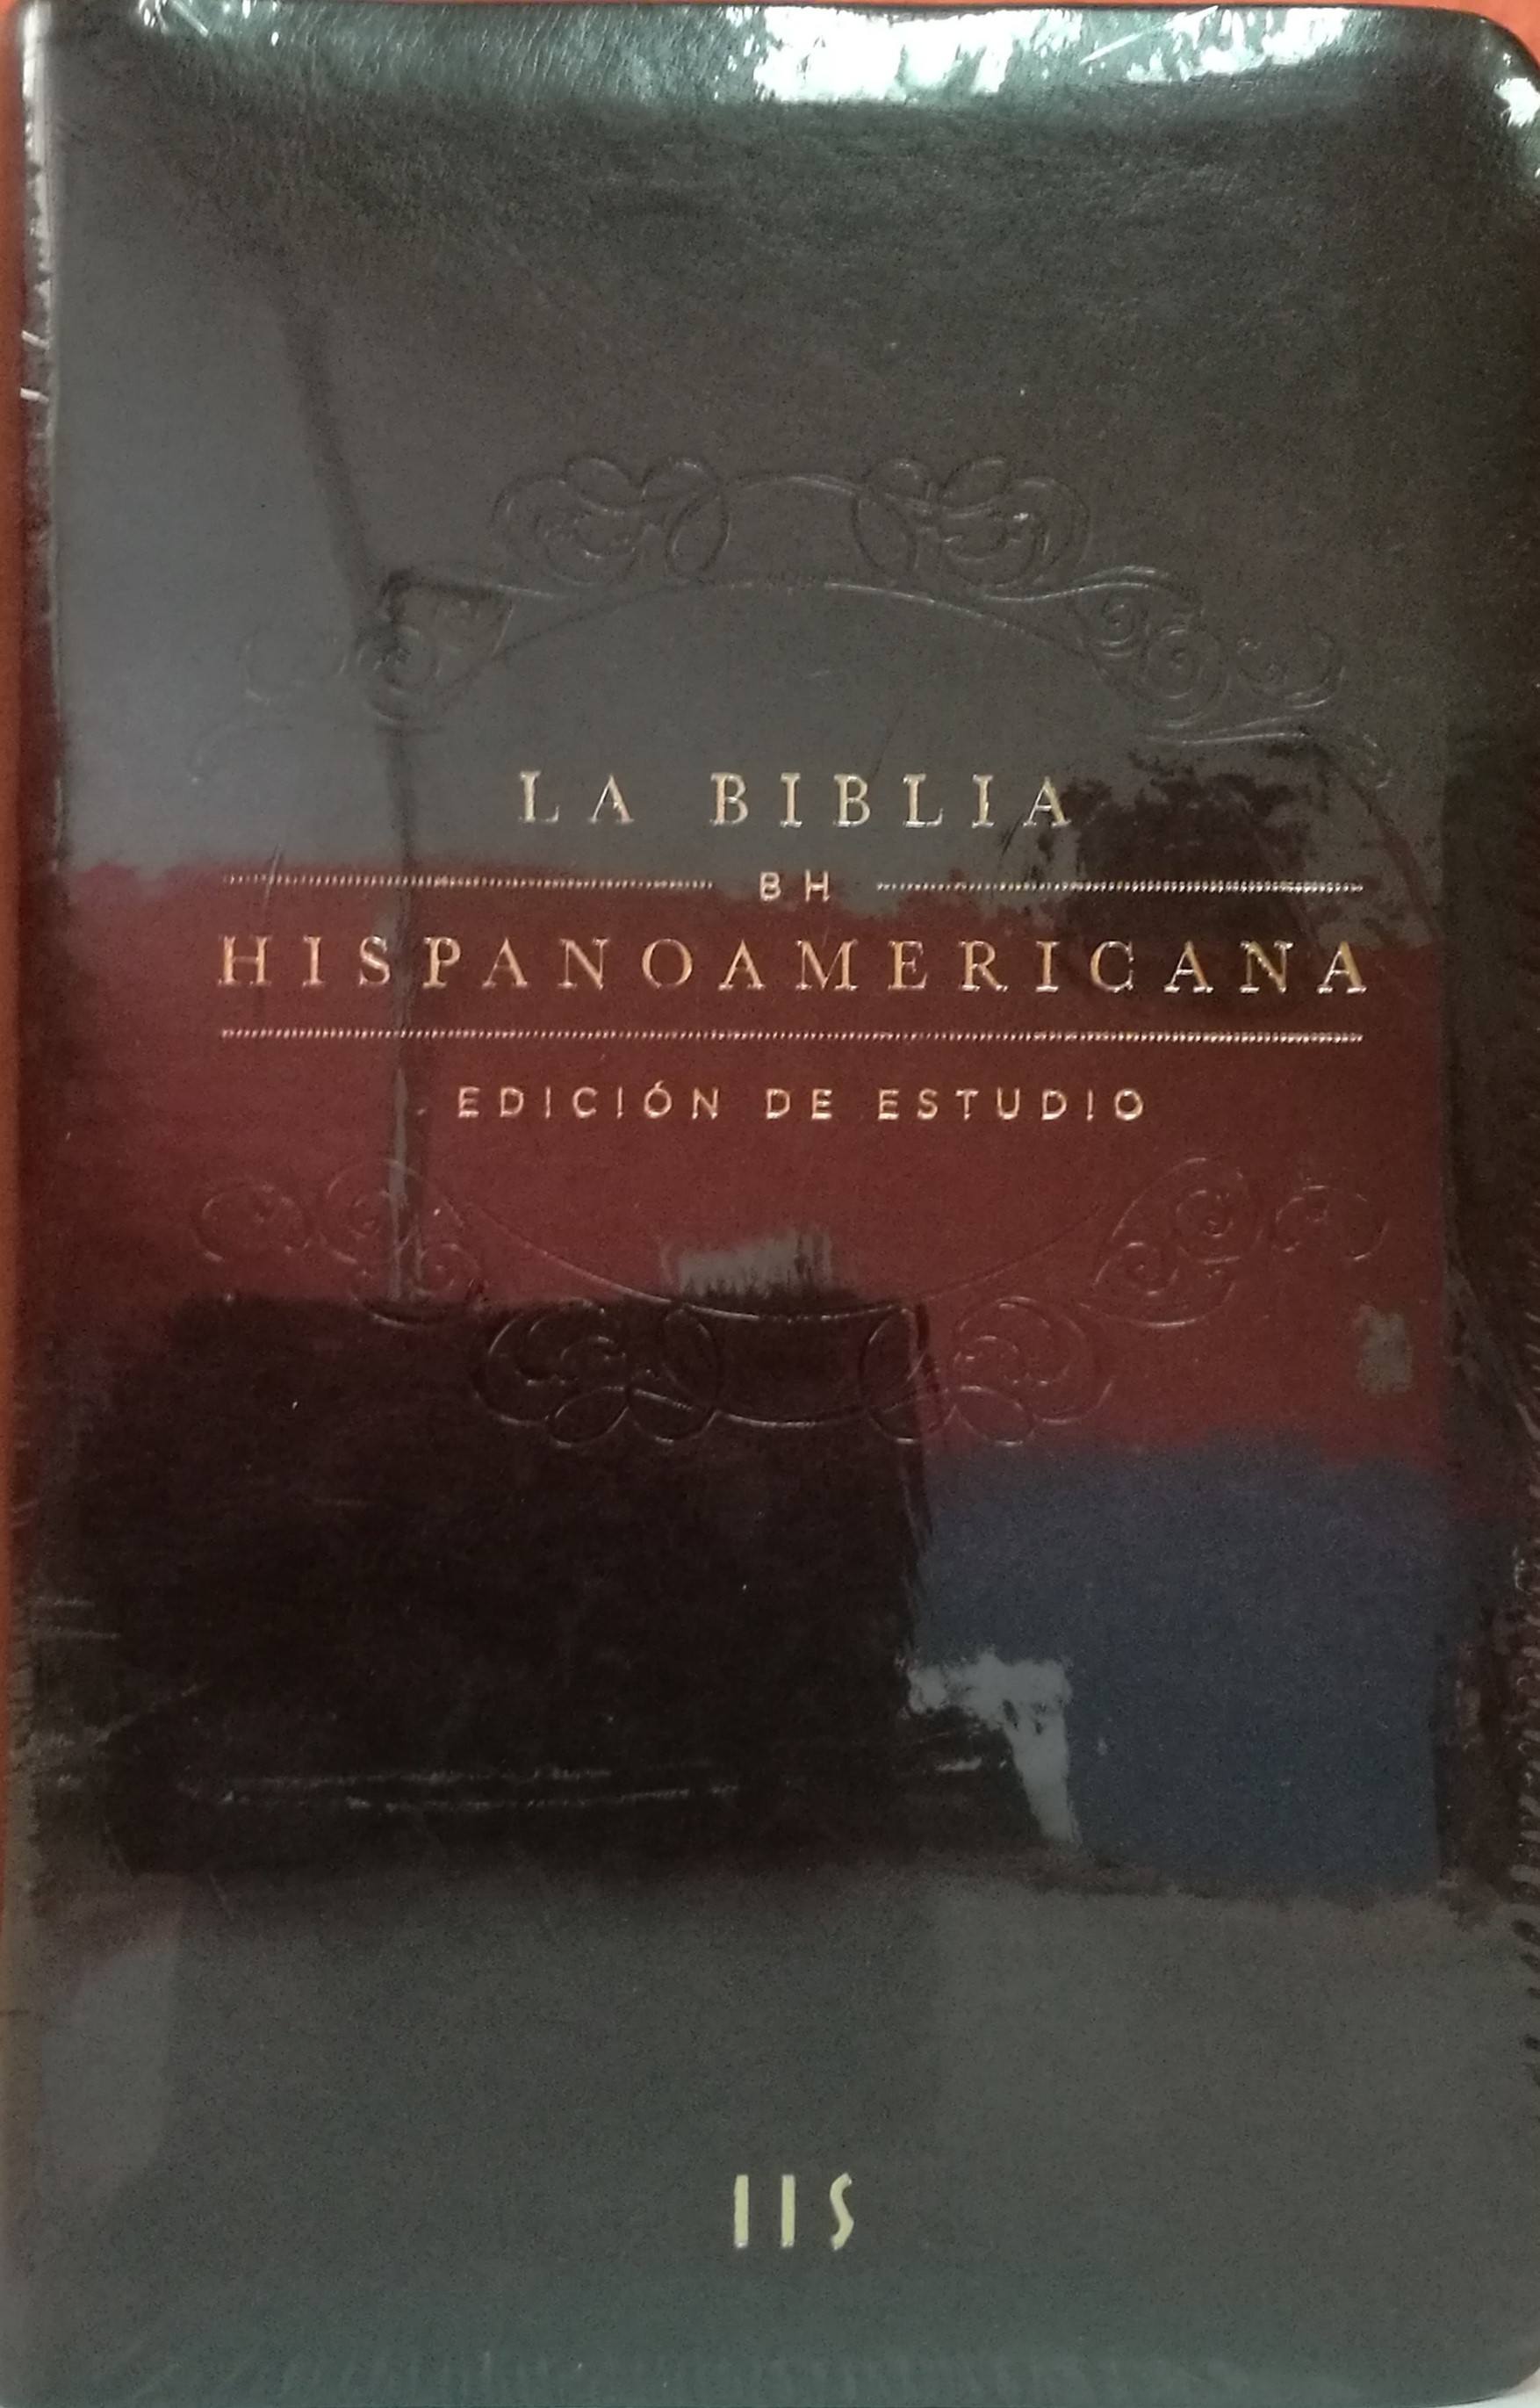 BHTI Biblia De Estudio Hispanoamericana